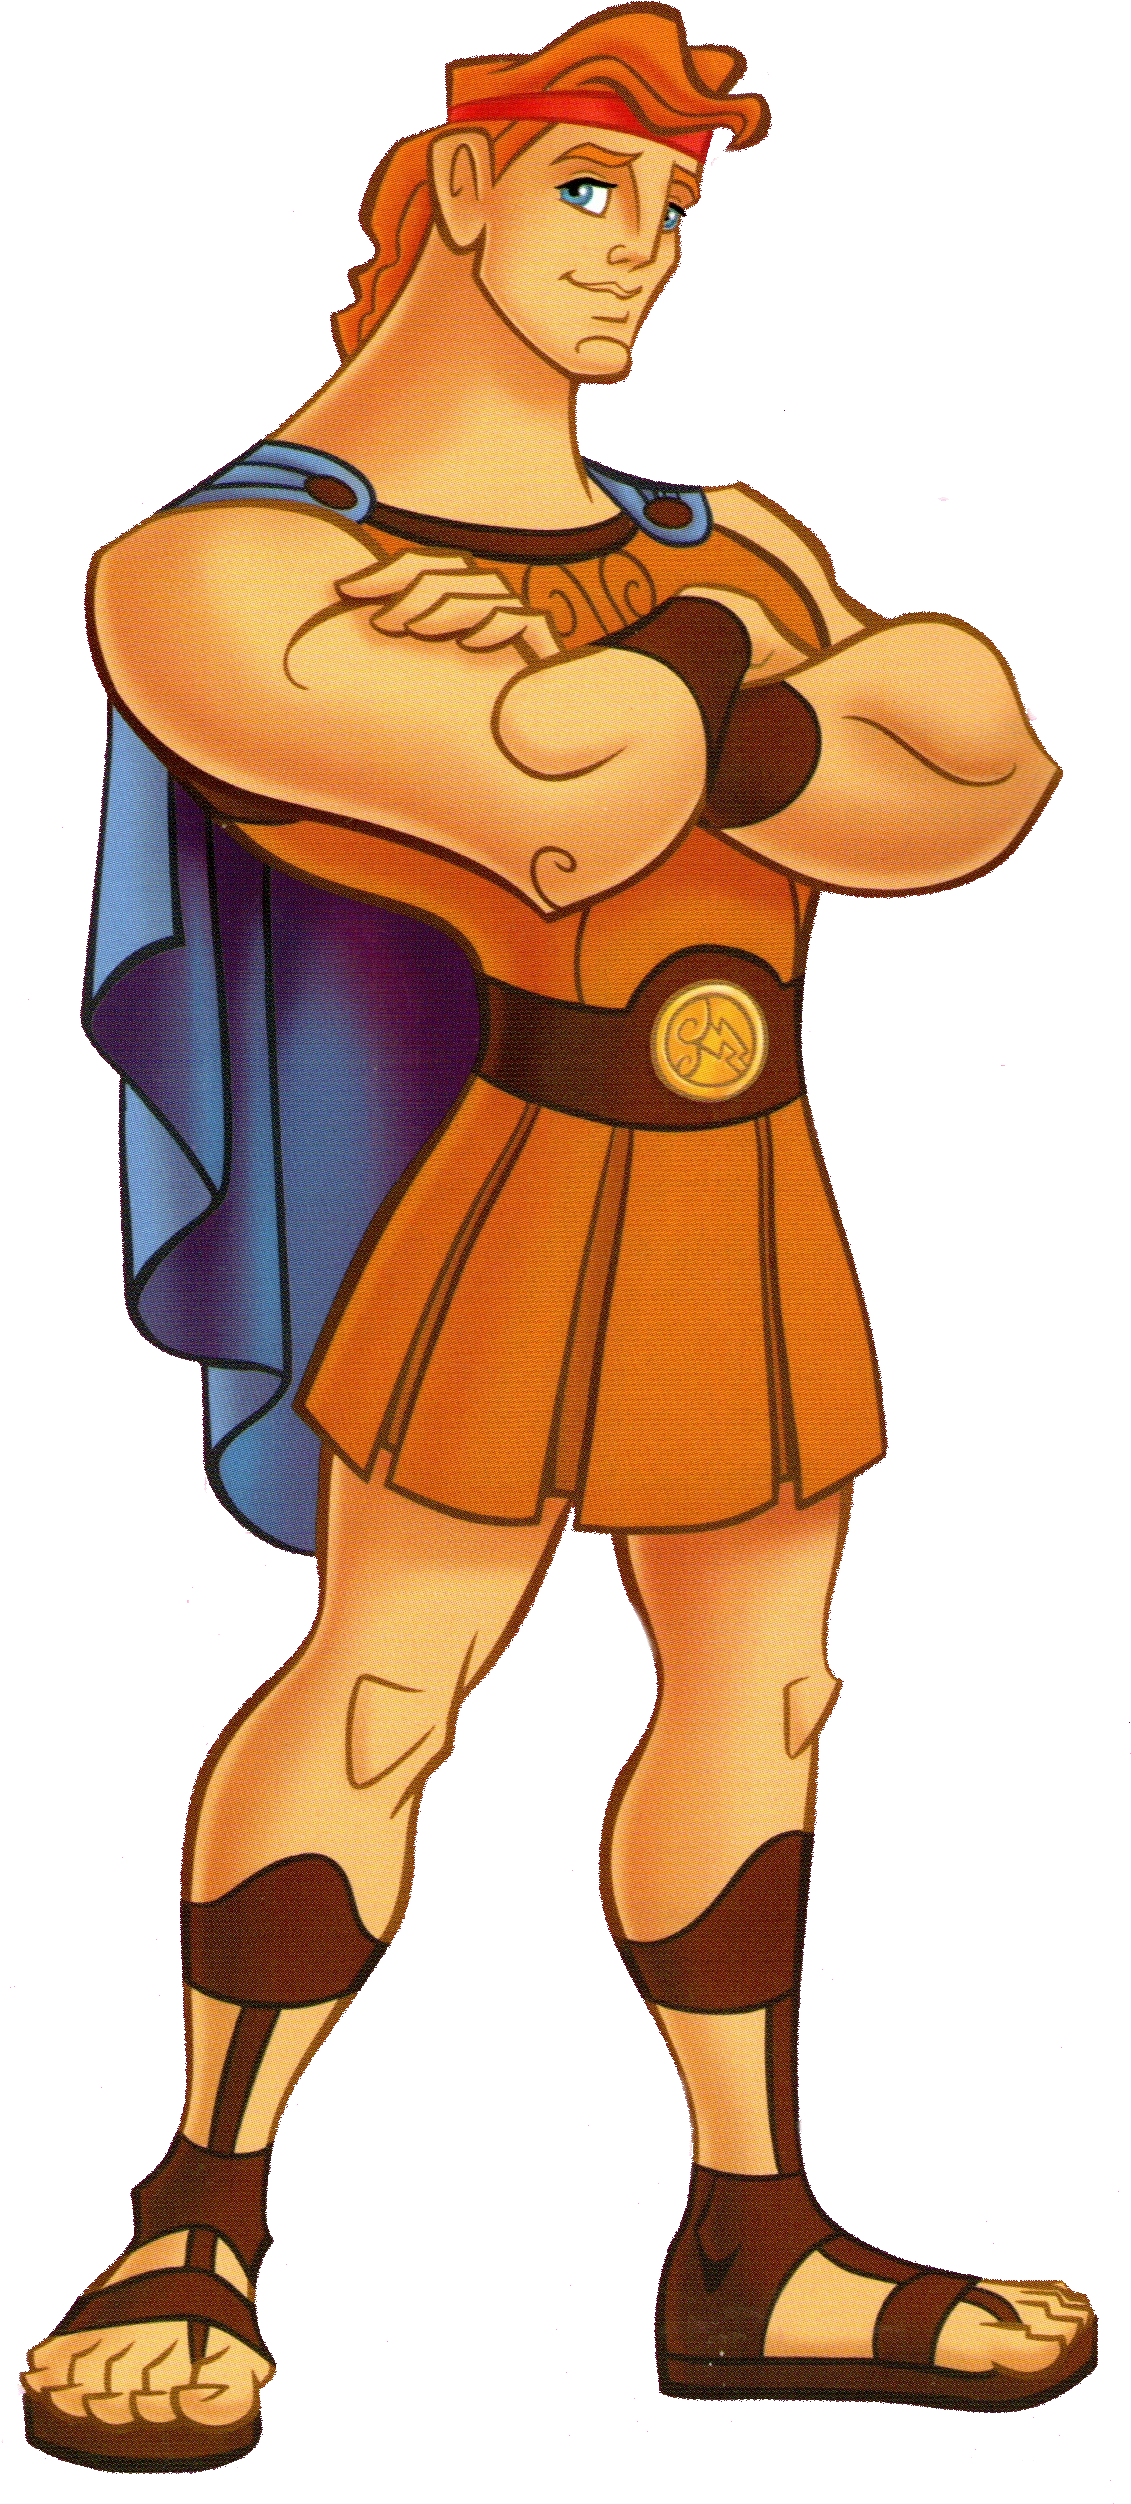 My Favorite Disney Hero Is Hercules - Hercules Disney (516x1117), Png Download